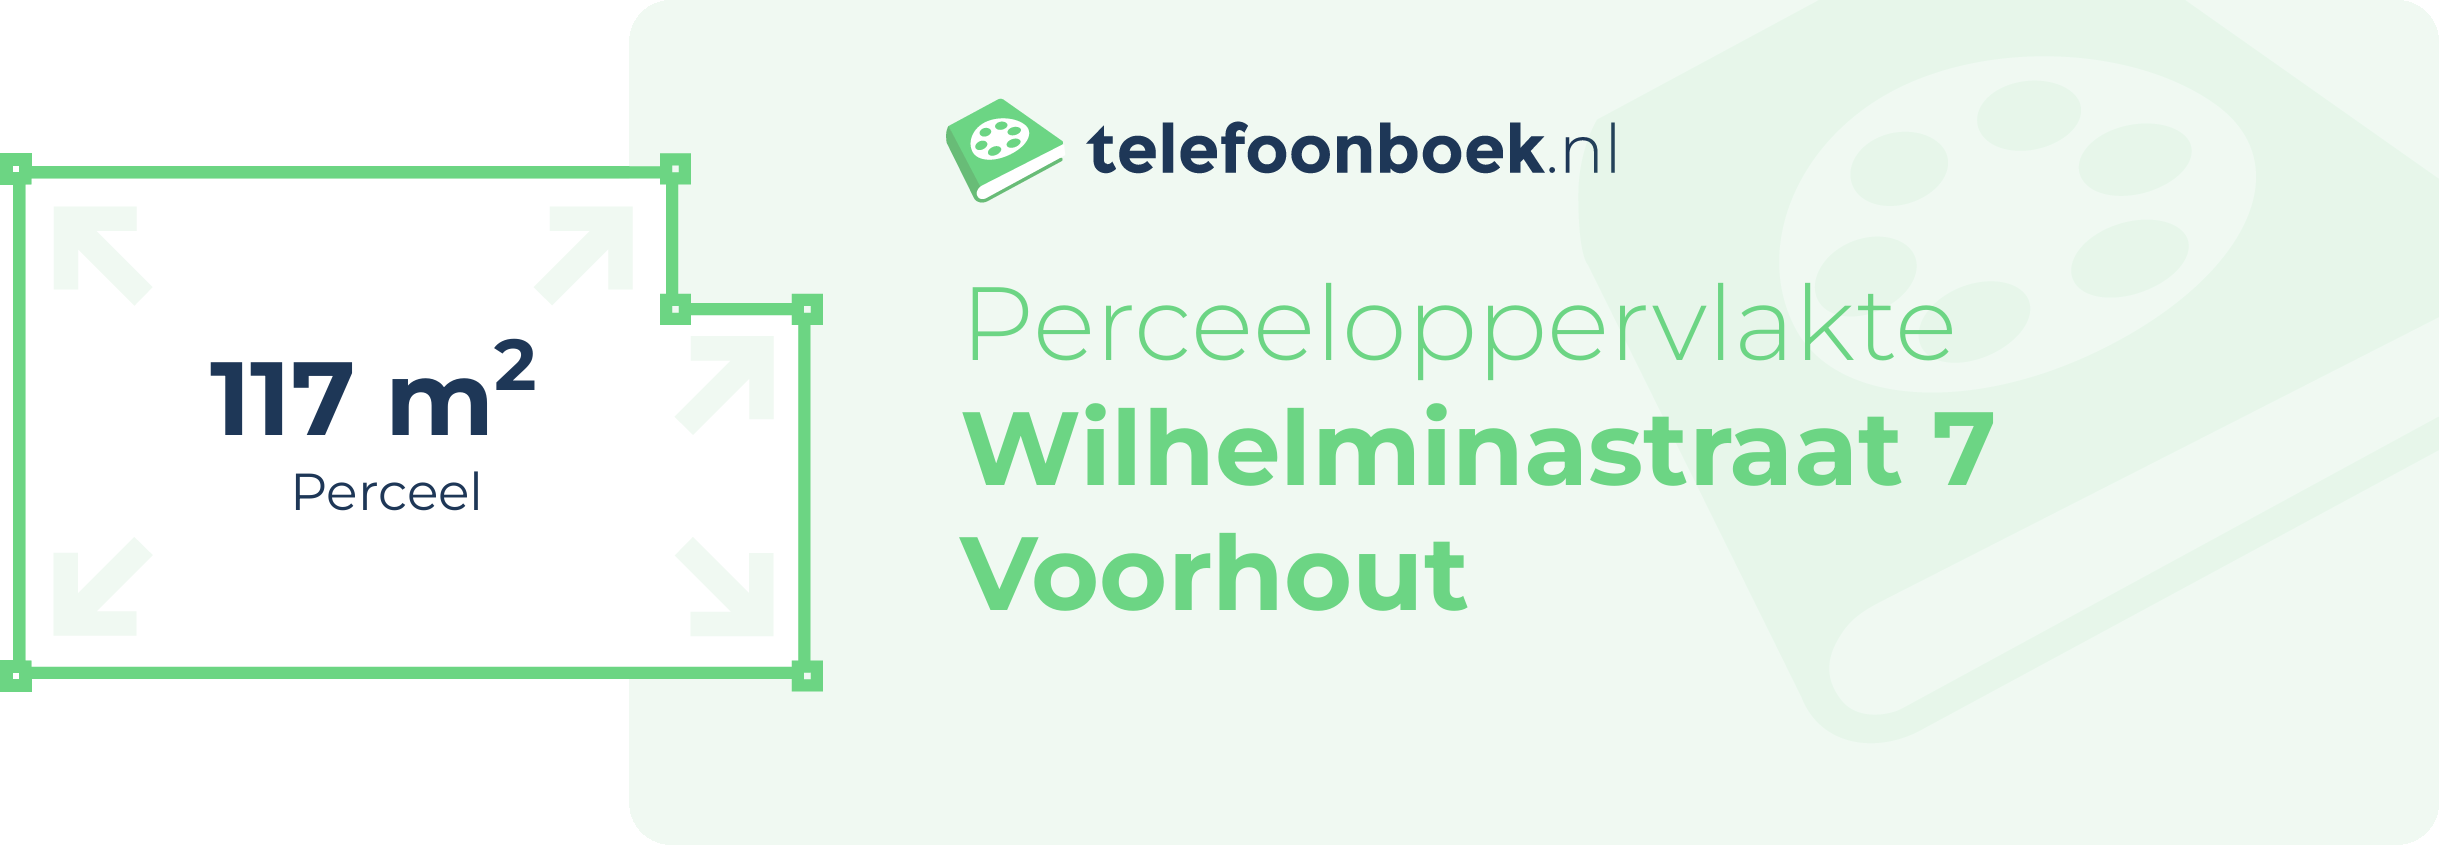 Perceeloppervlakte Wilhelminastraat 7 Voorhout